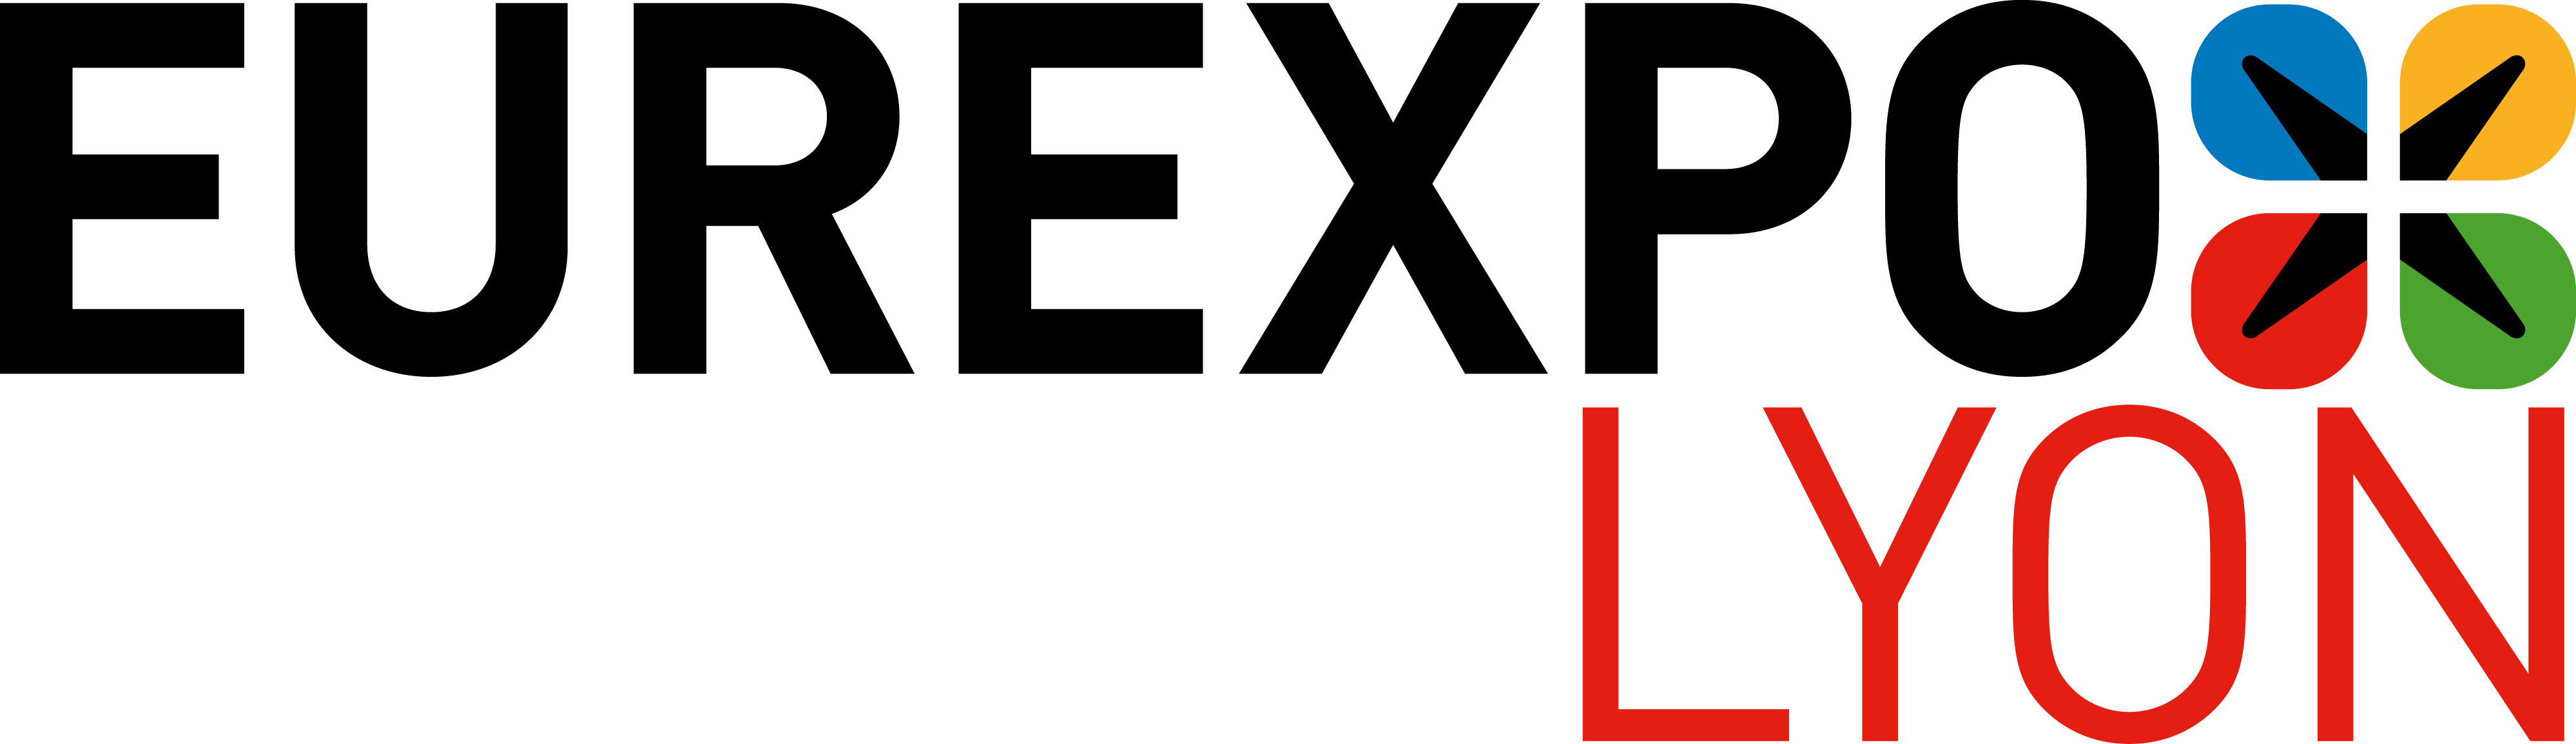 Eurexpo Logo photo - 1